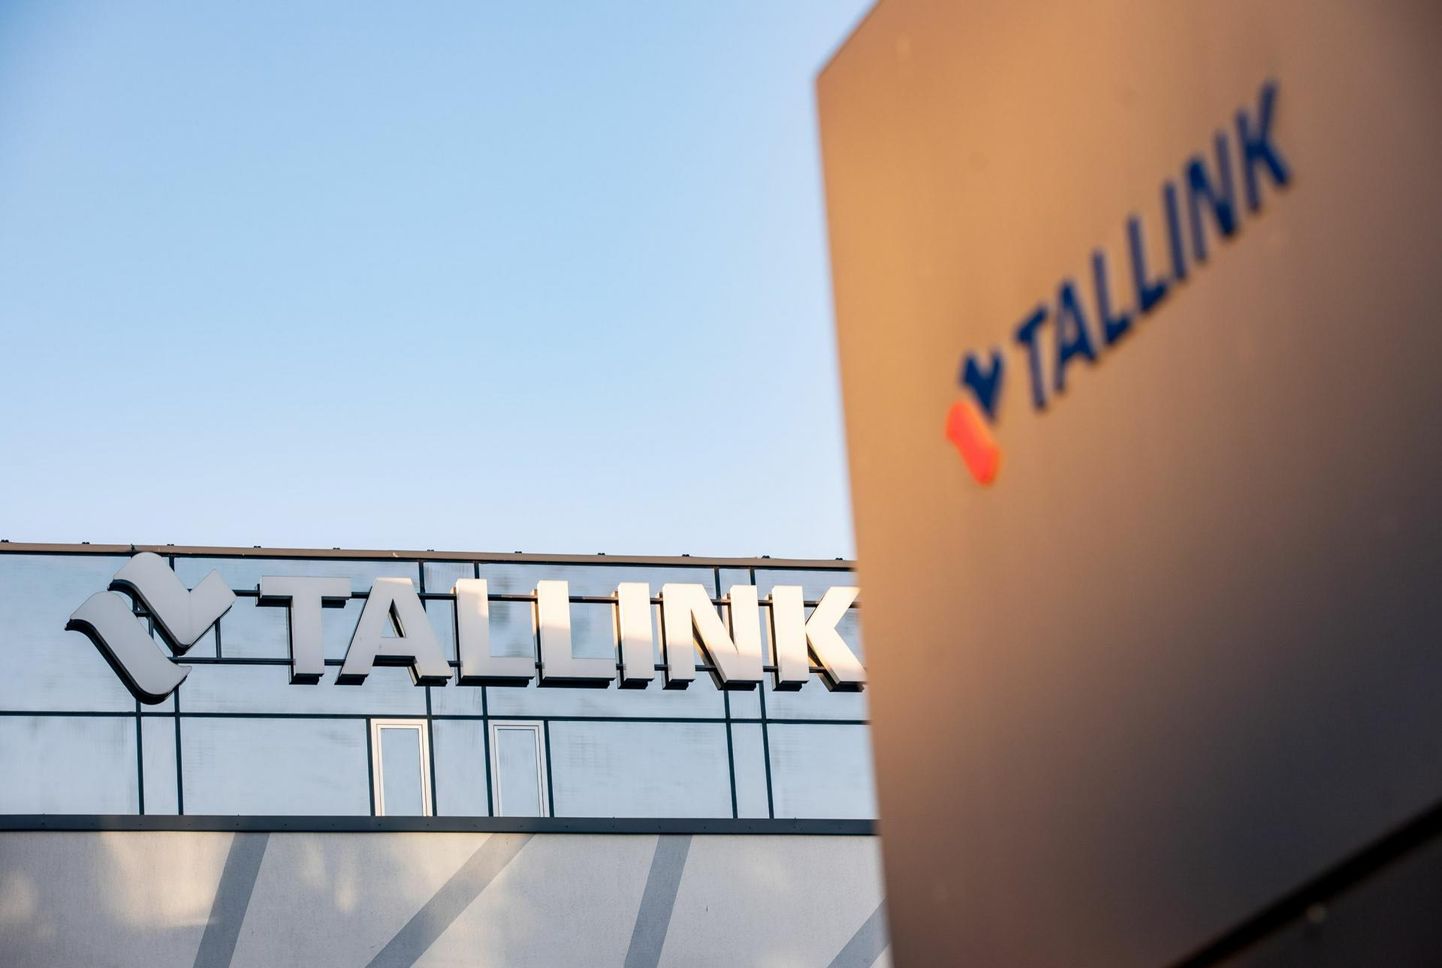 Tähelepanuväärne on Tallinki 33 miljoni euro suurune kasum võrrelduna 0,7 miljoni euro suuruse kahjumiga aasta tagasi.